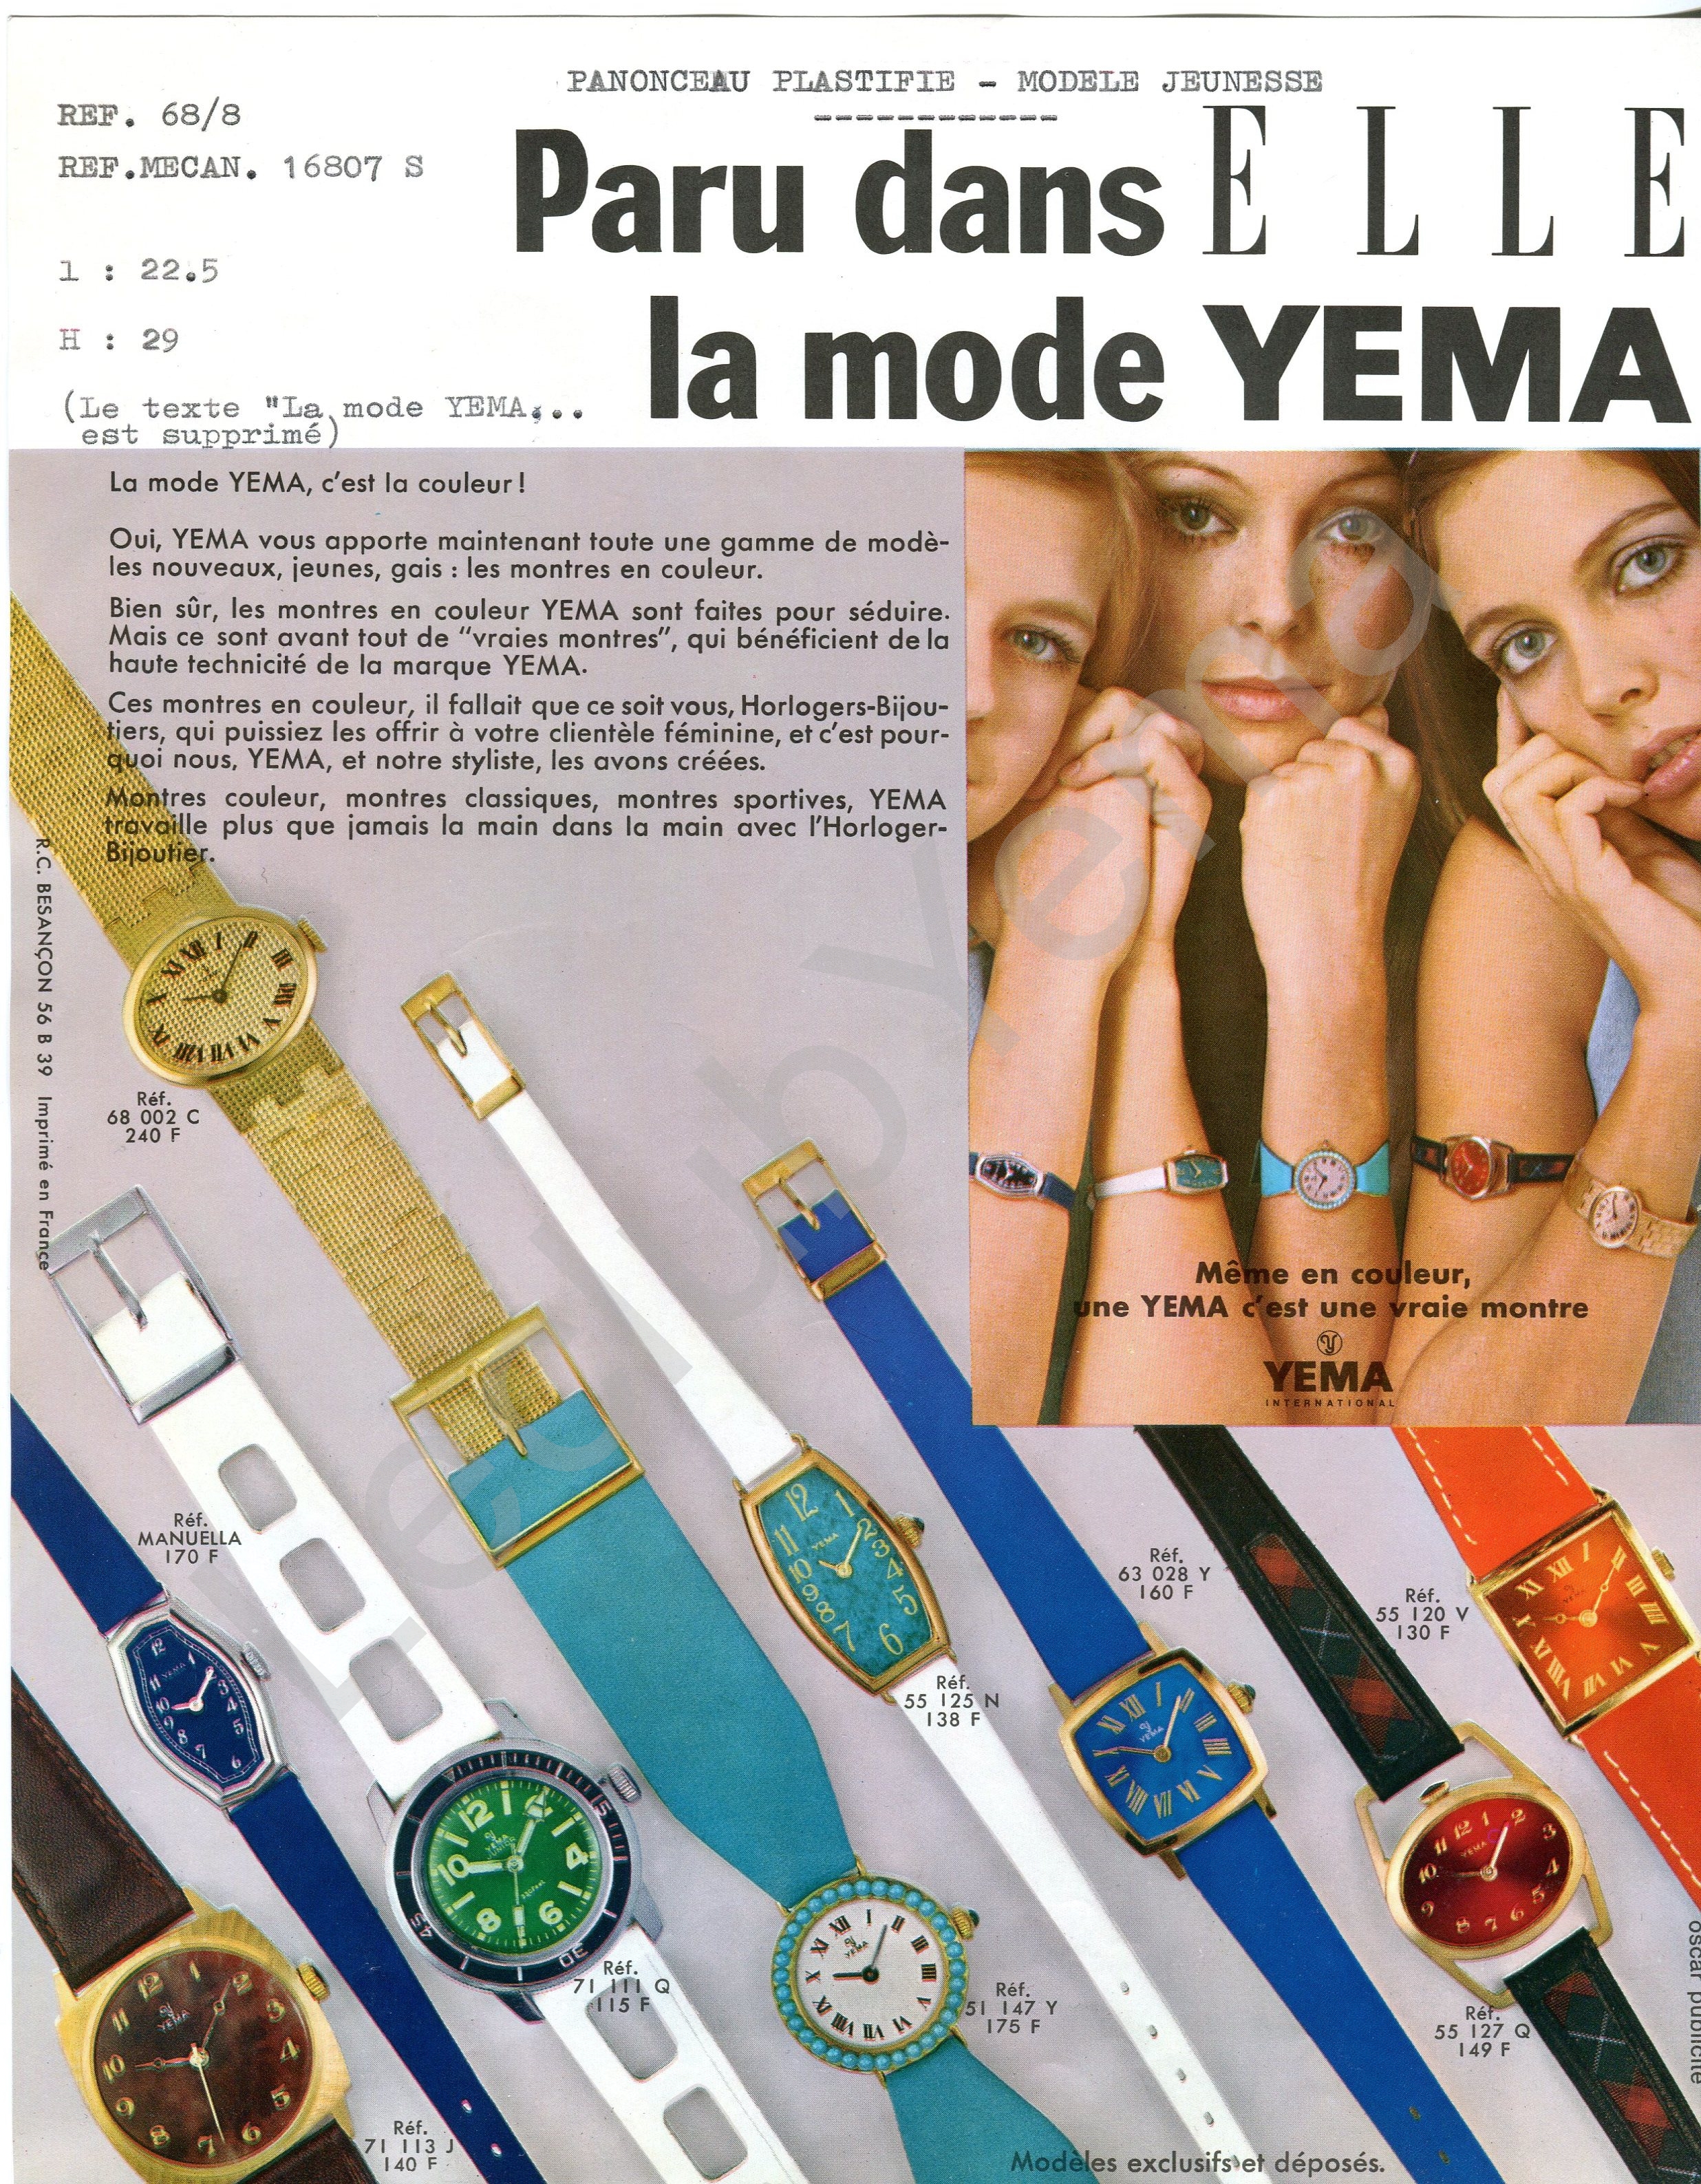 Publicité YEMA_Support d'insertion de campagne publicitaire réseau H.B.J.O. - Aimablement confié par YEMA